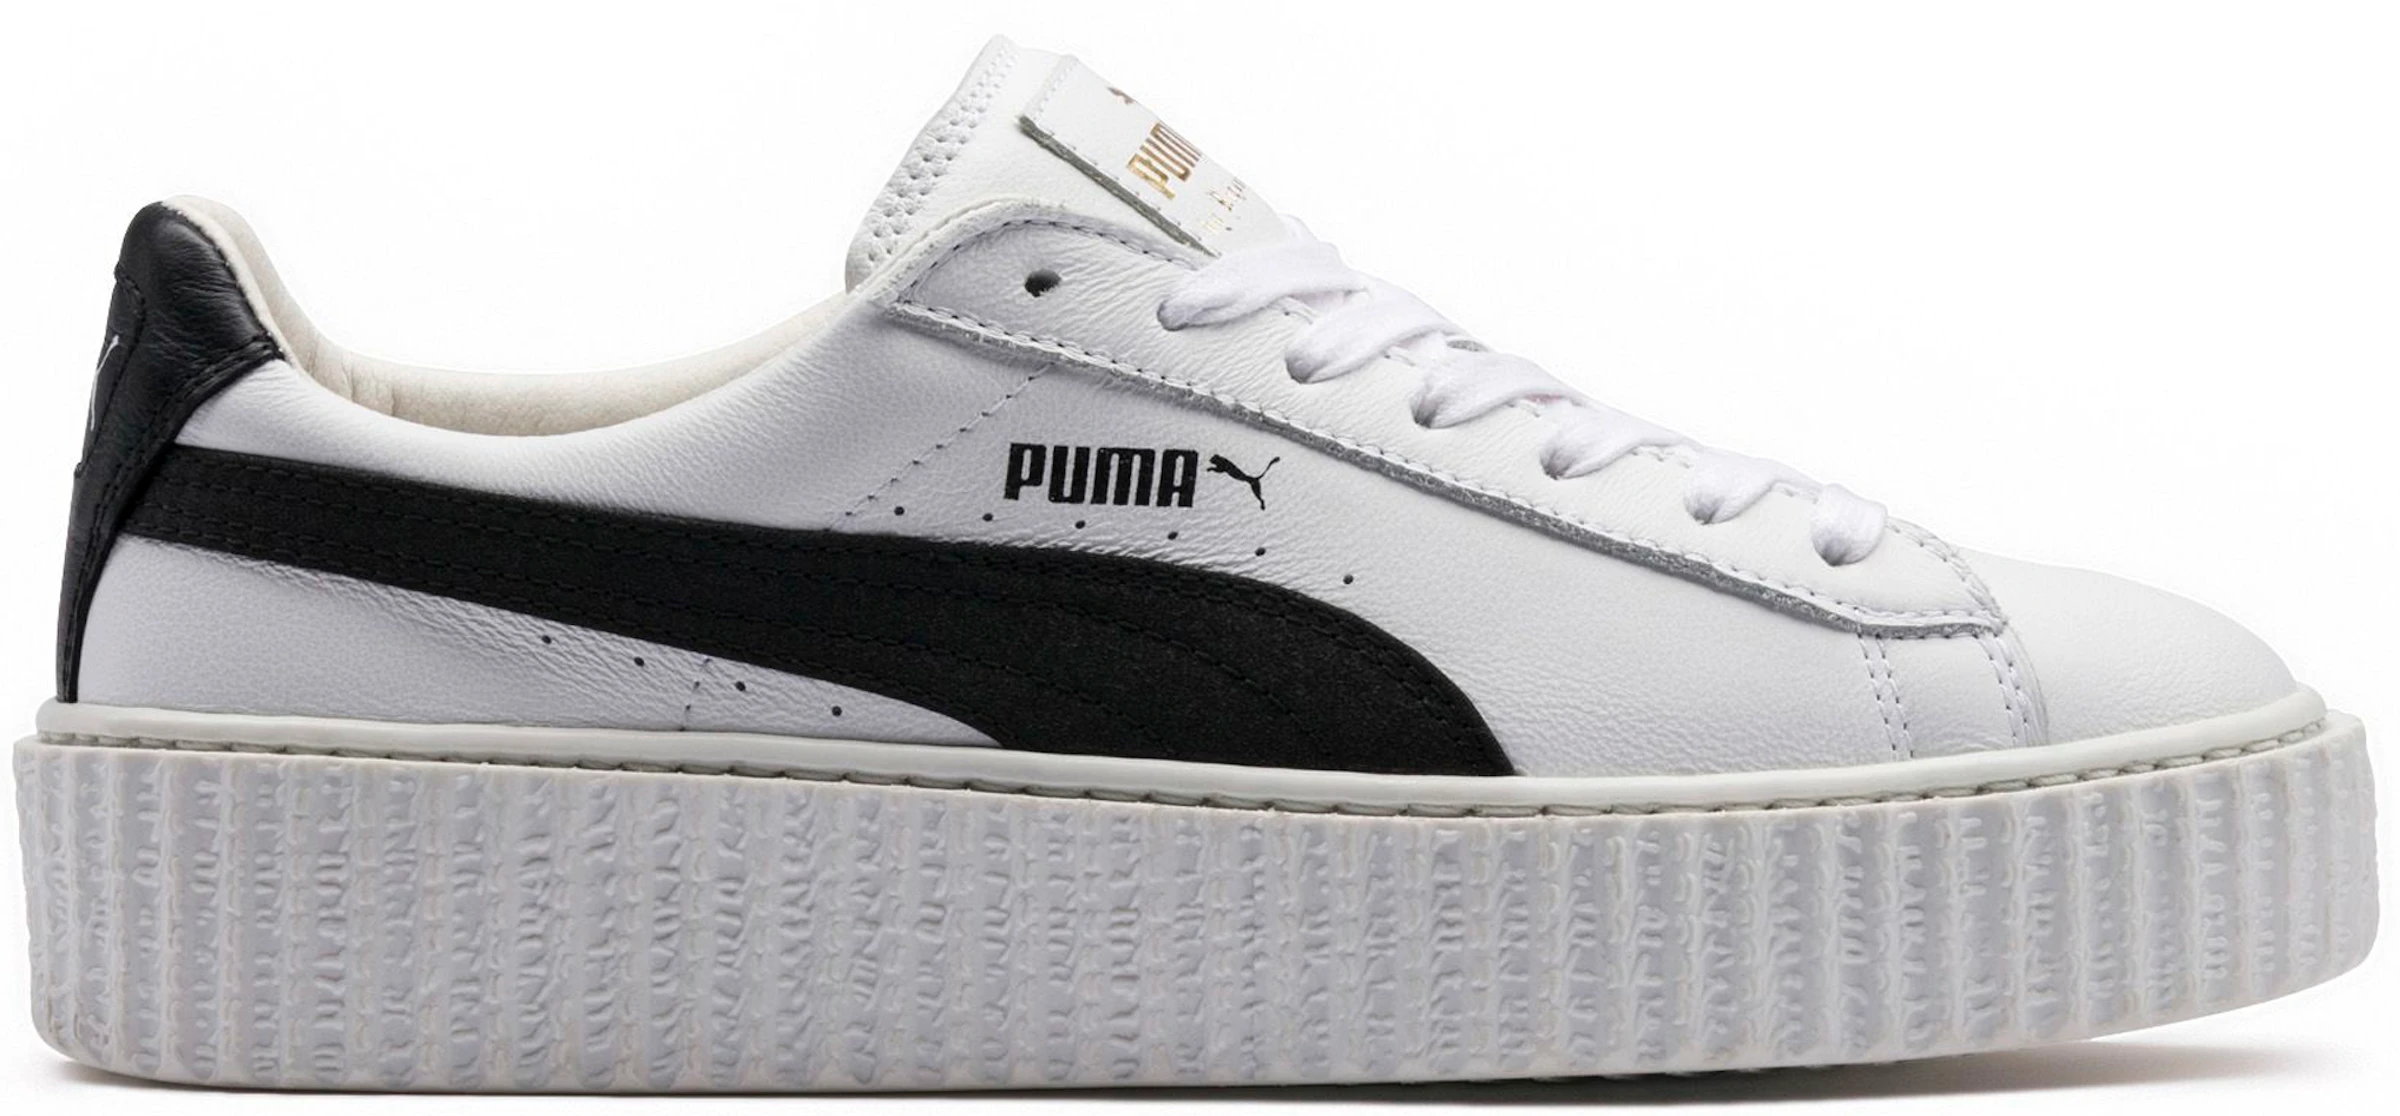 Puma Creeper Rihanna Leather White - 364640-01 -